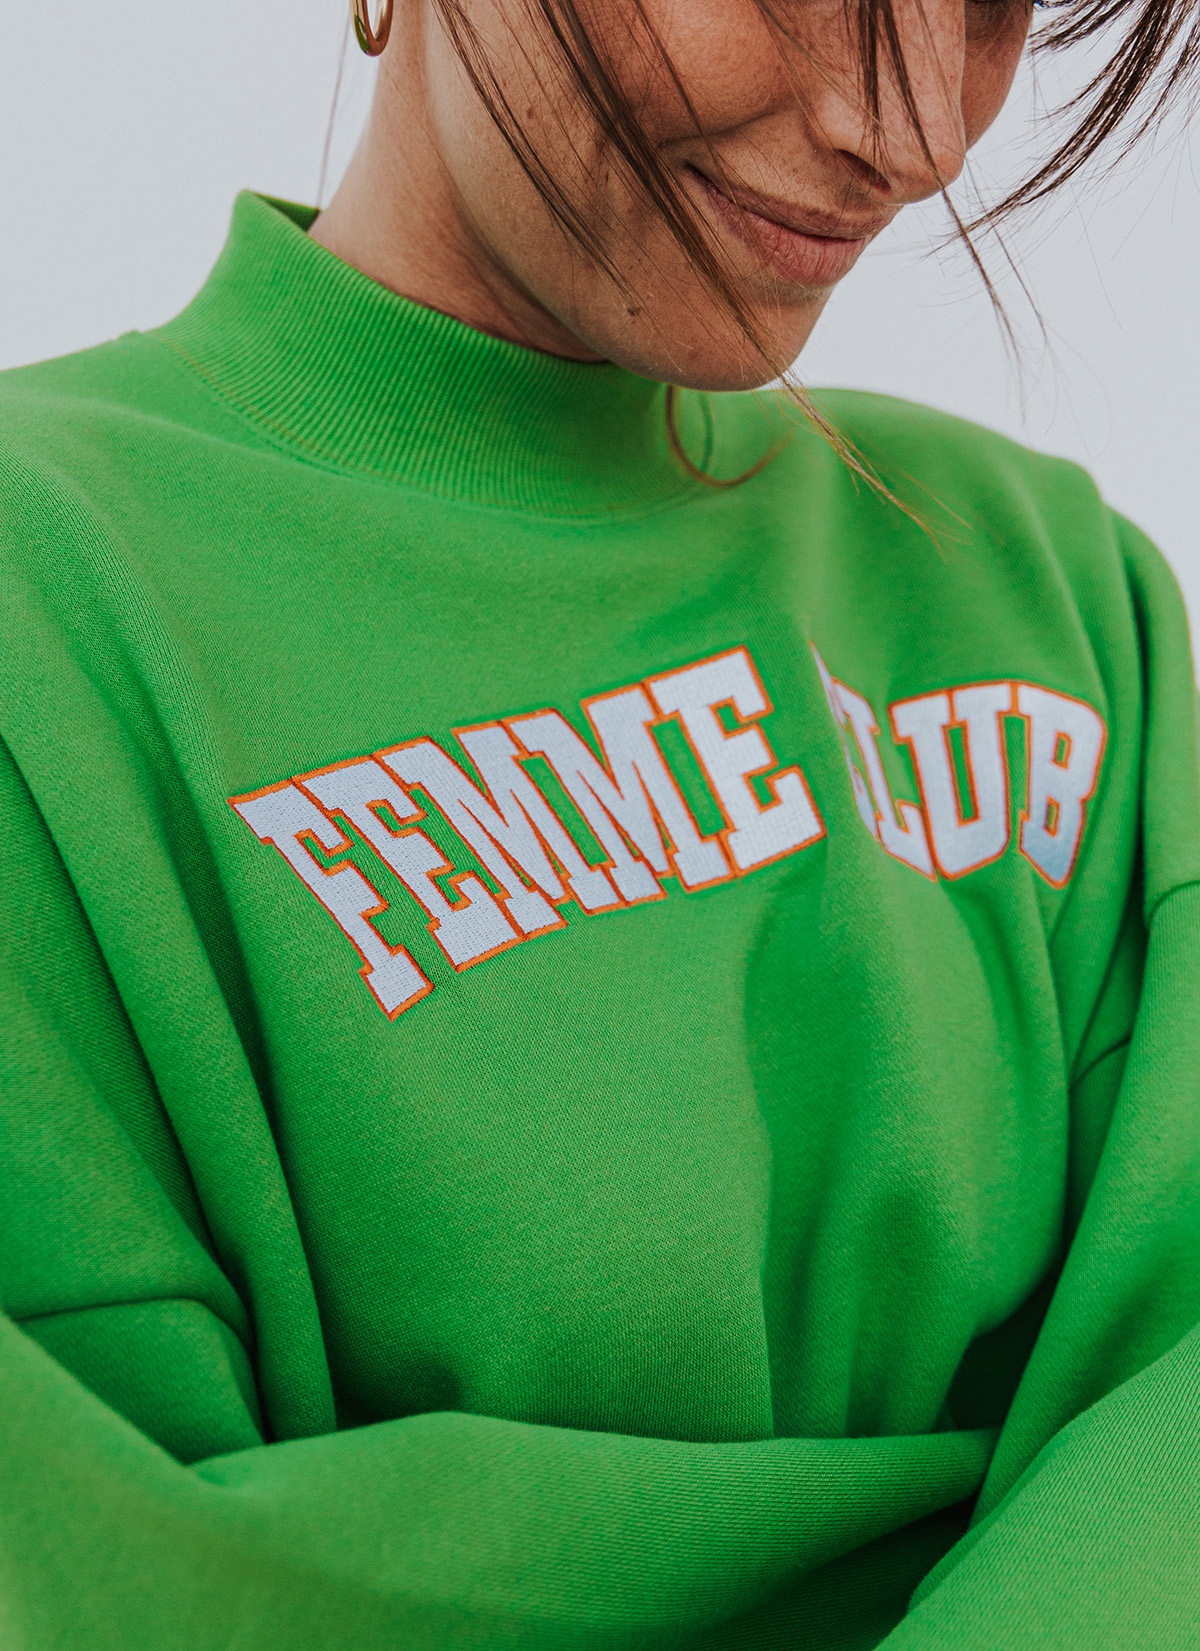 Femme Club Sweater Green 1608 WEAR